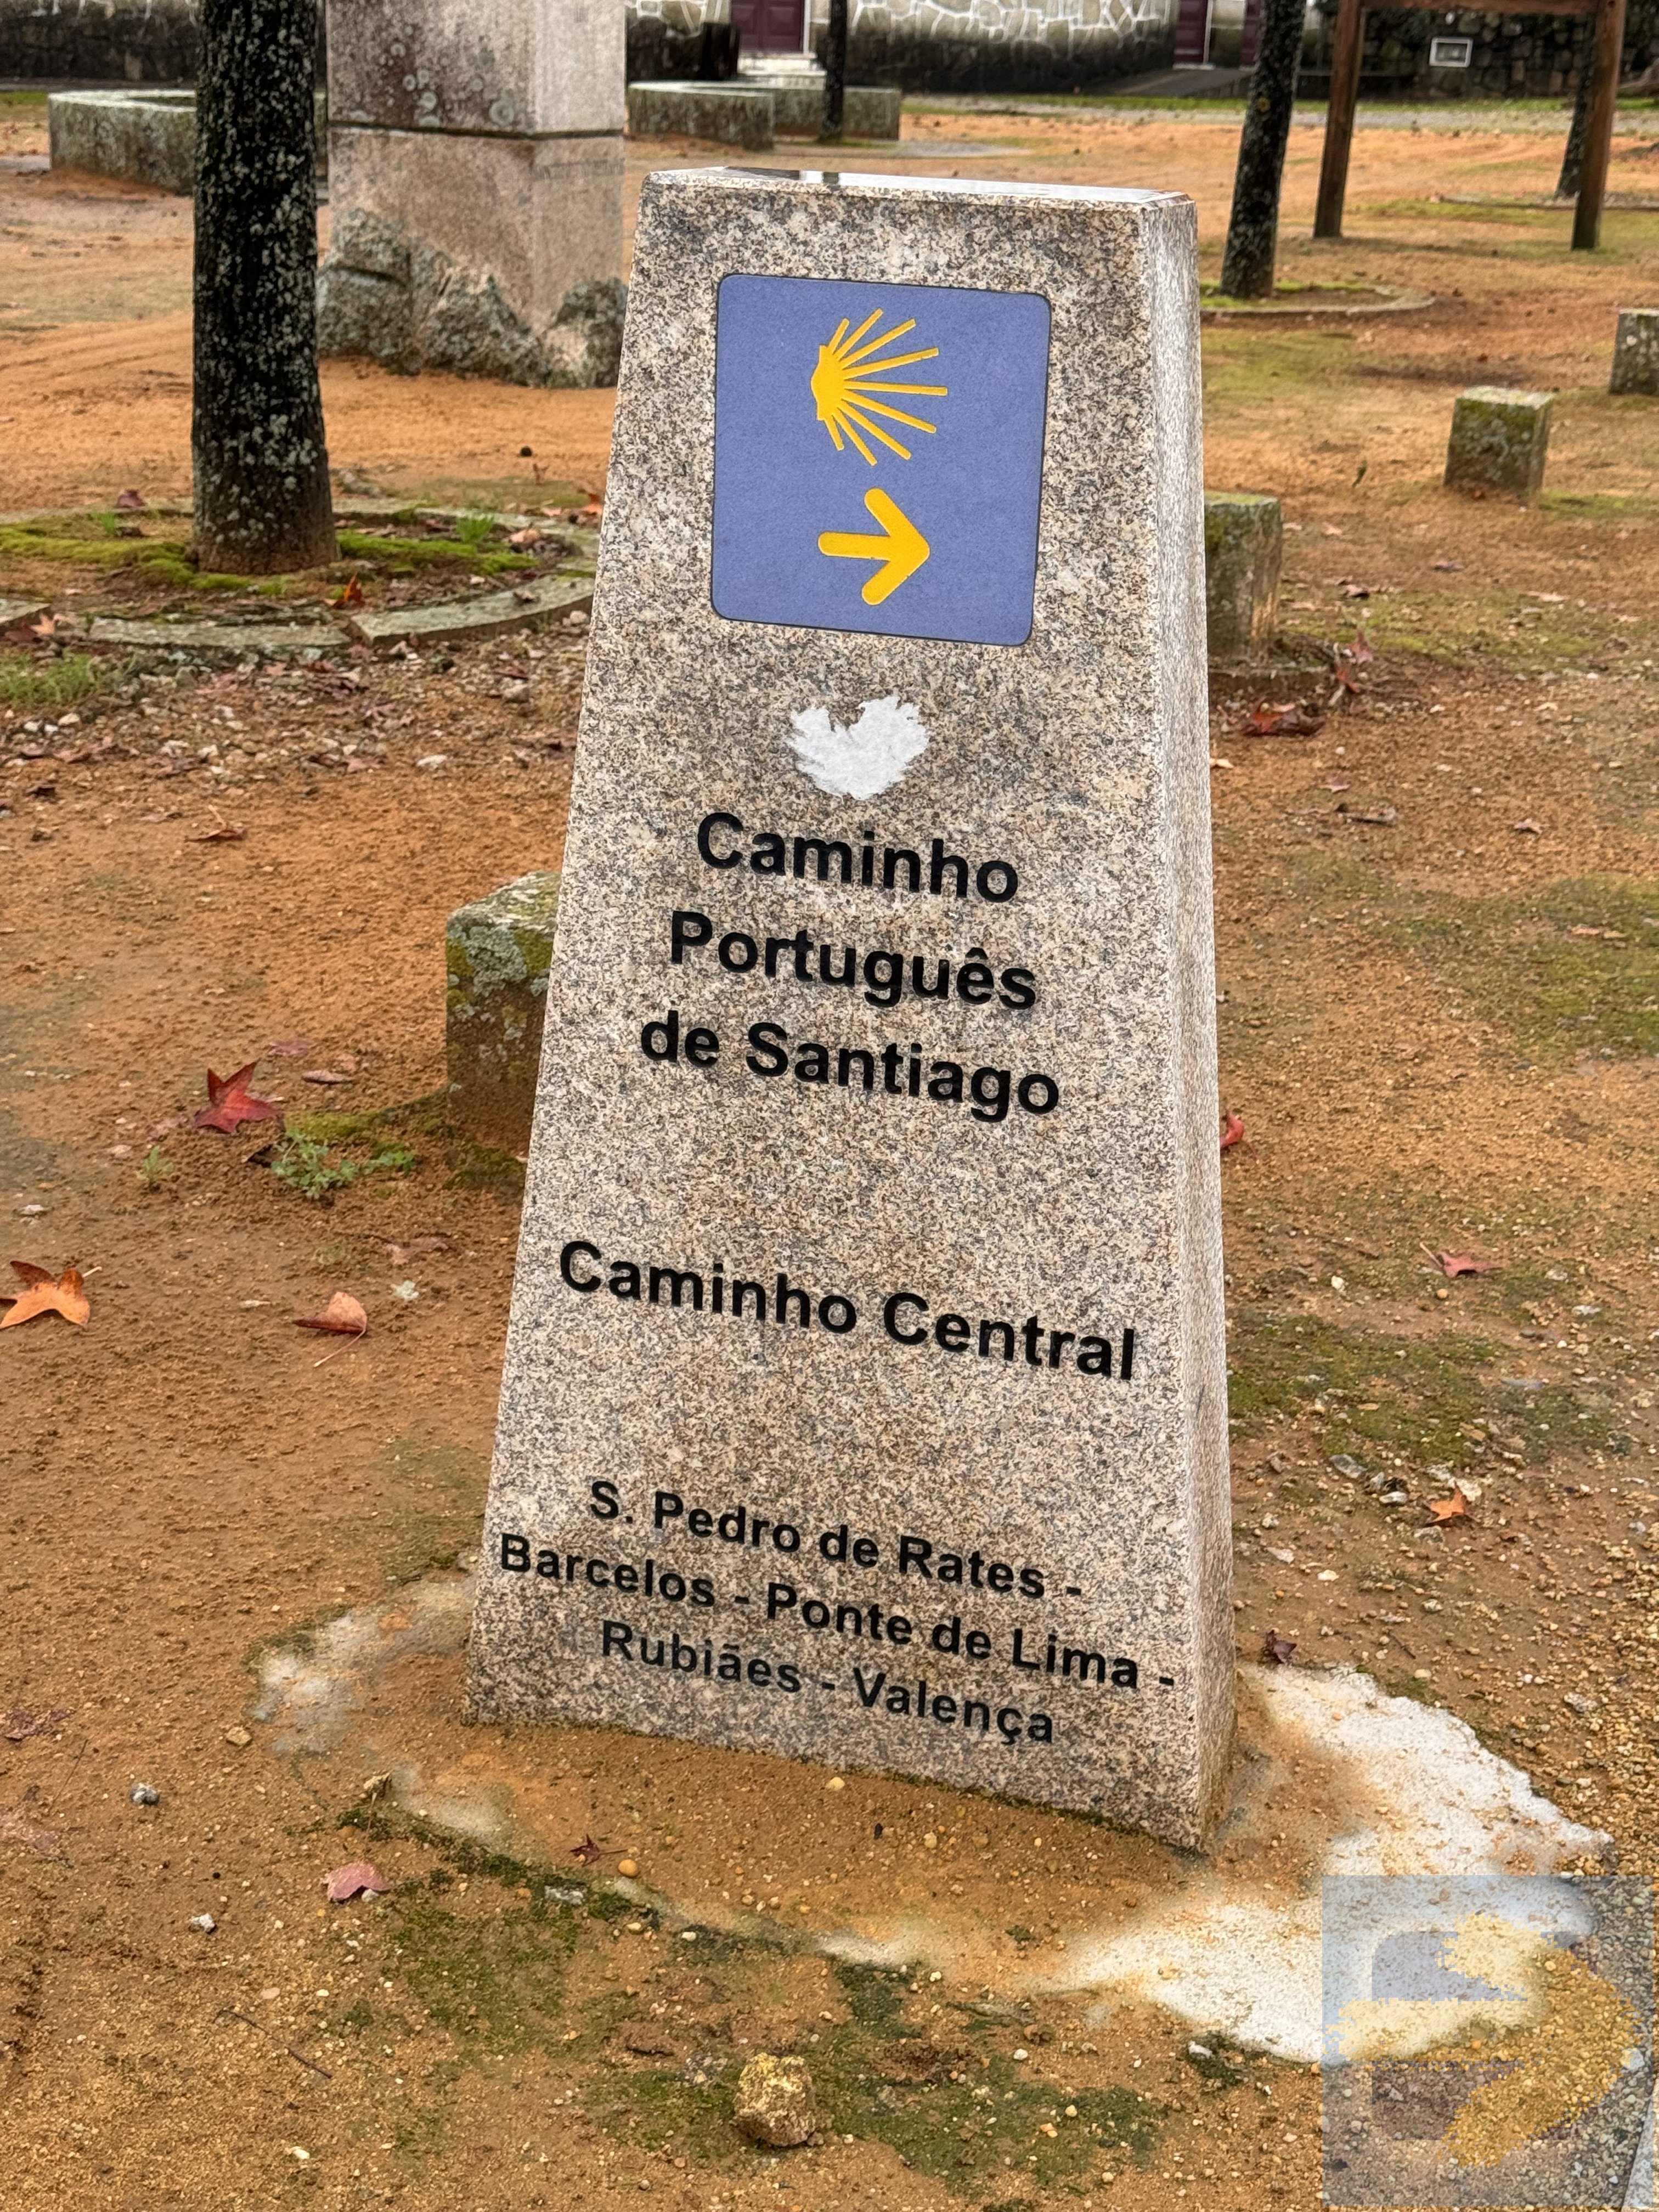 In Rates today  Camino de Santiago Forum